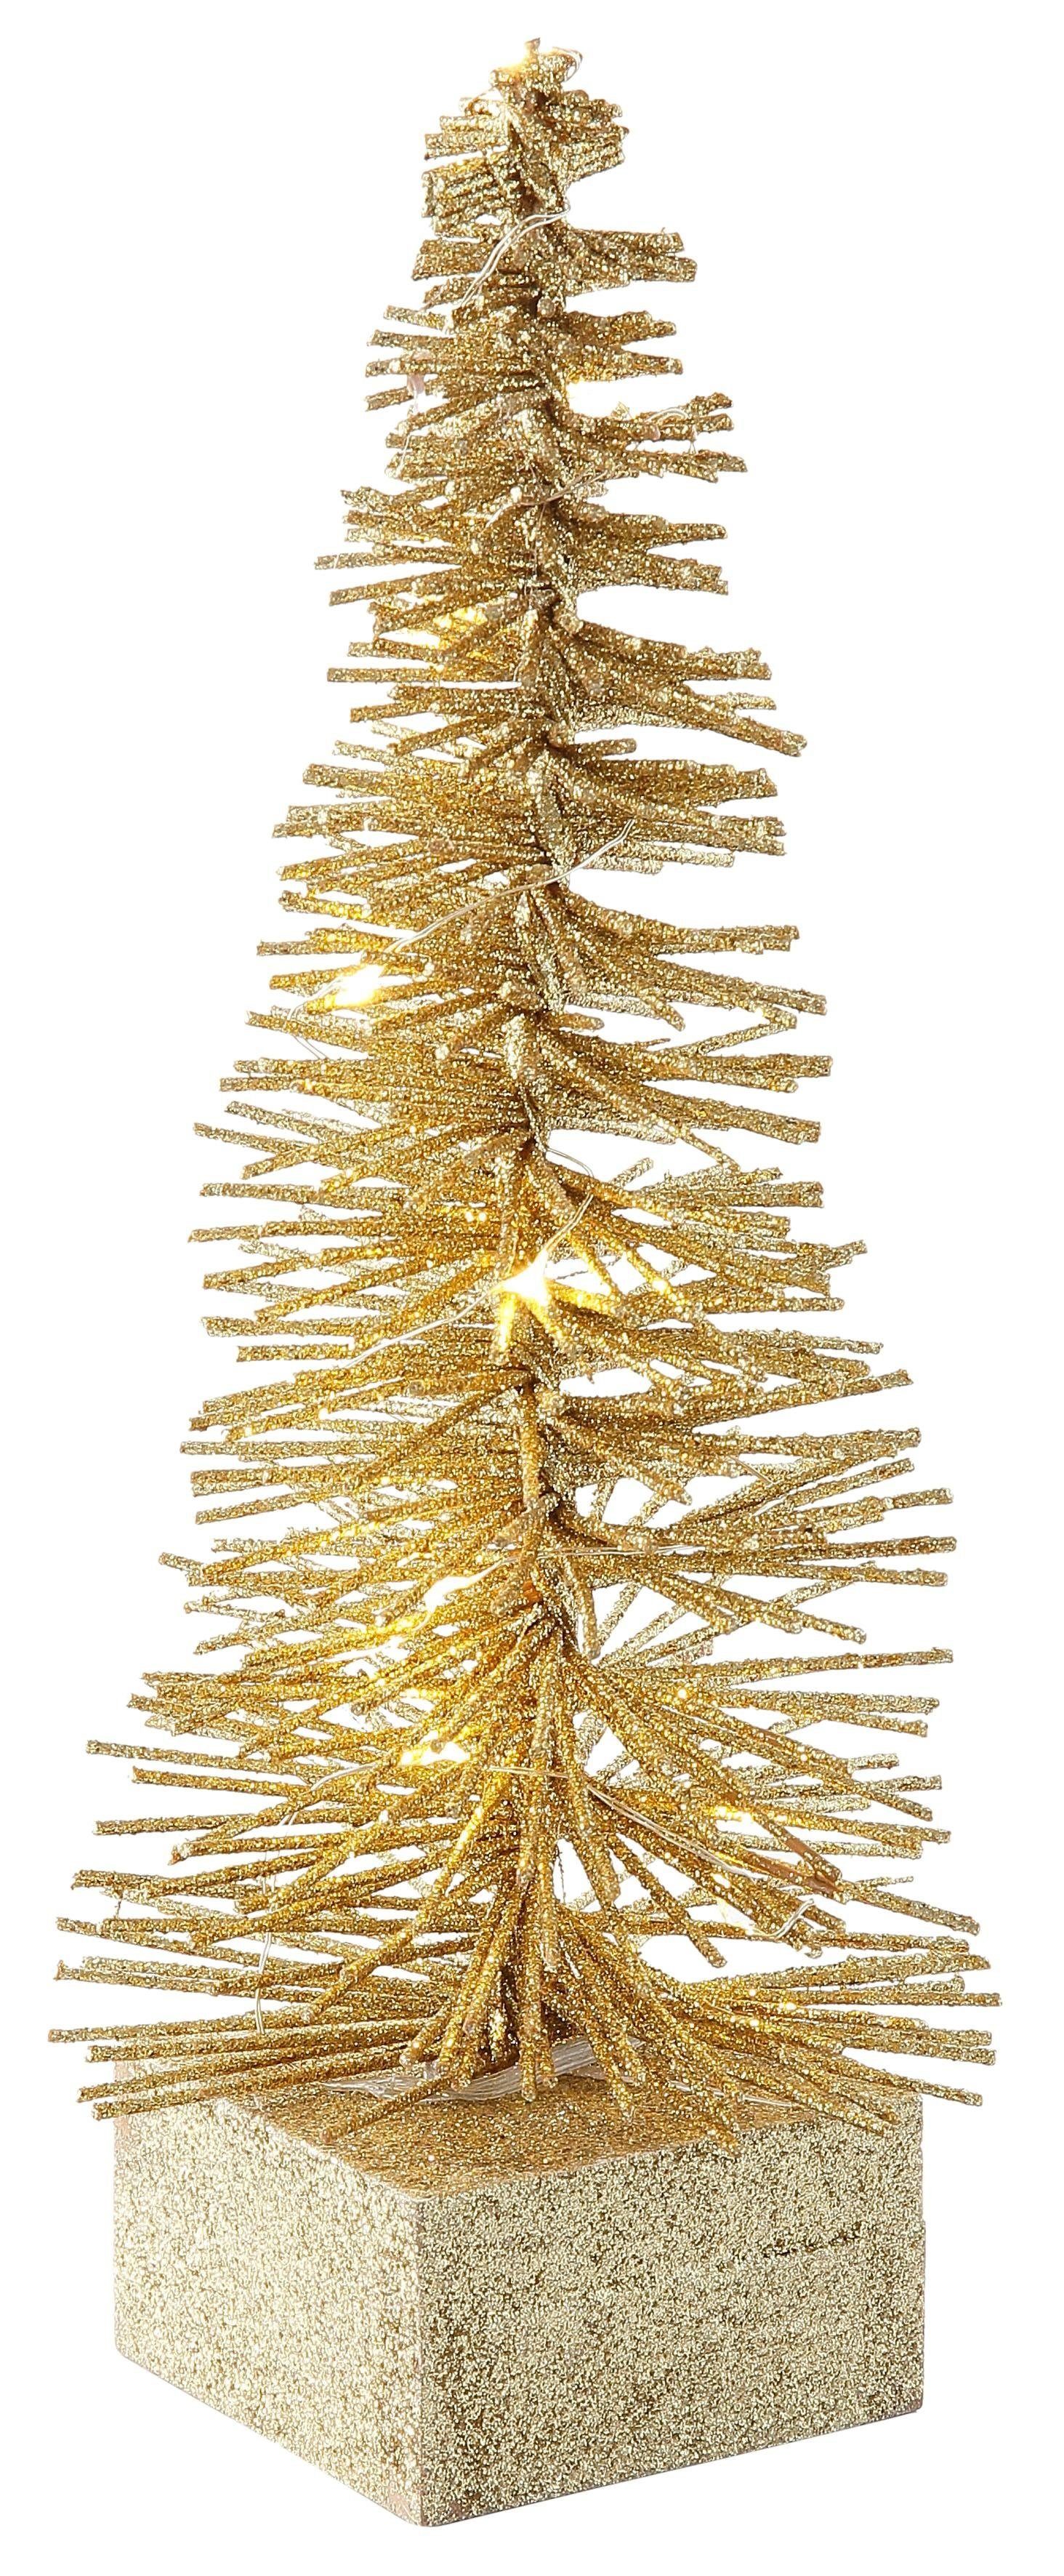 fest Creativ Fernbedienung Timerfunktion, champagner und LED light Baum mit Weihnachtsdeko, LED integriert, Timer